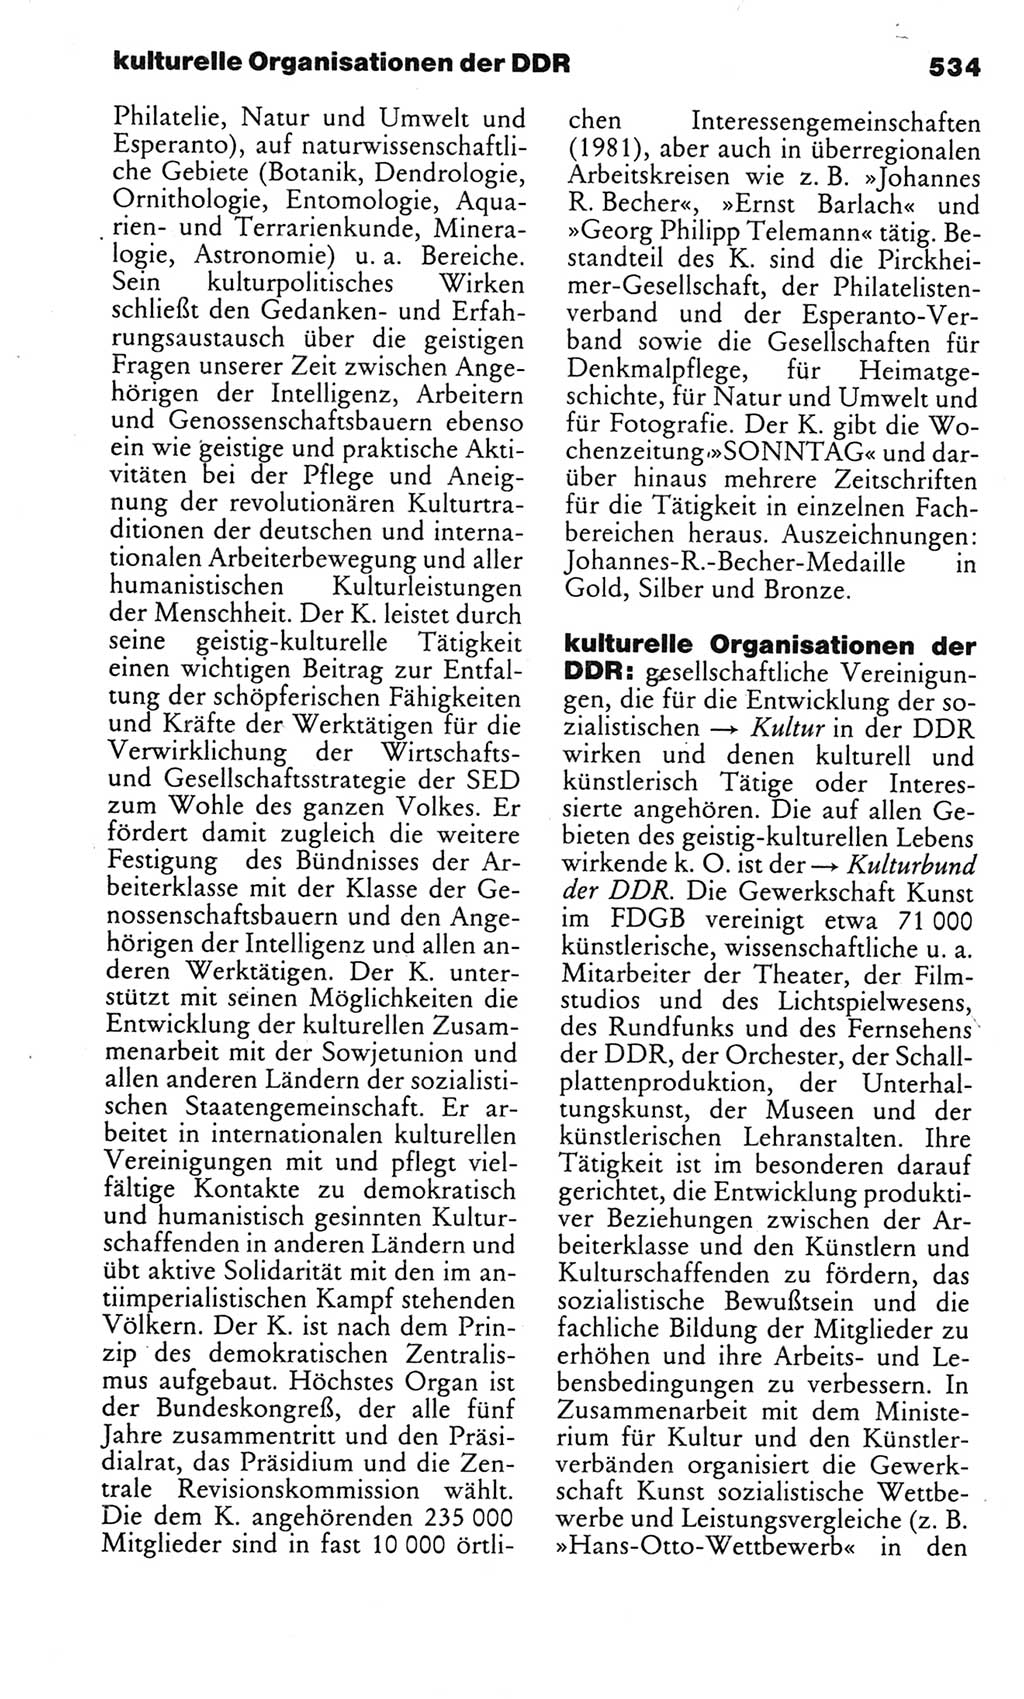 Kleines politisches Wörterbuch [Deutsche Demokratische Republik (DDR)] 1983, Seite 534 (Kl. pol. Wb. DDR 1983, S. 534)